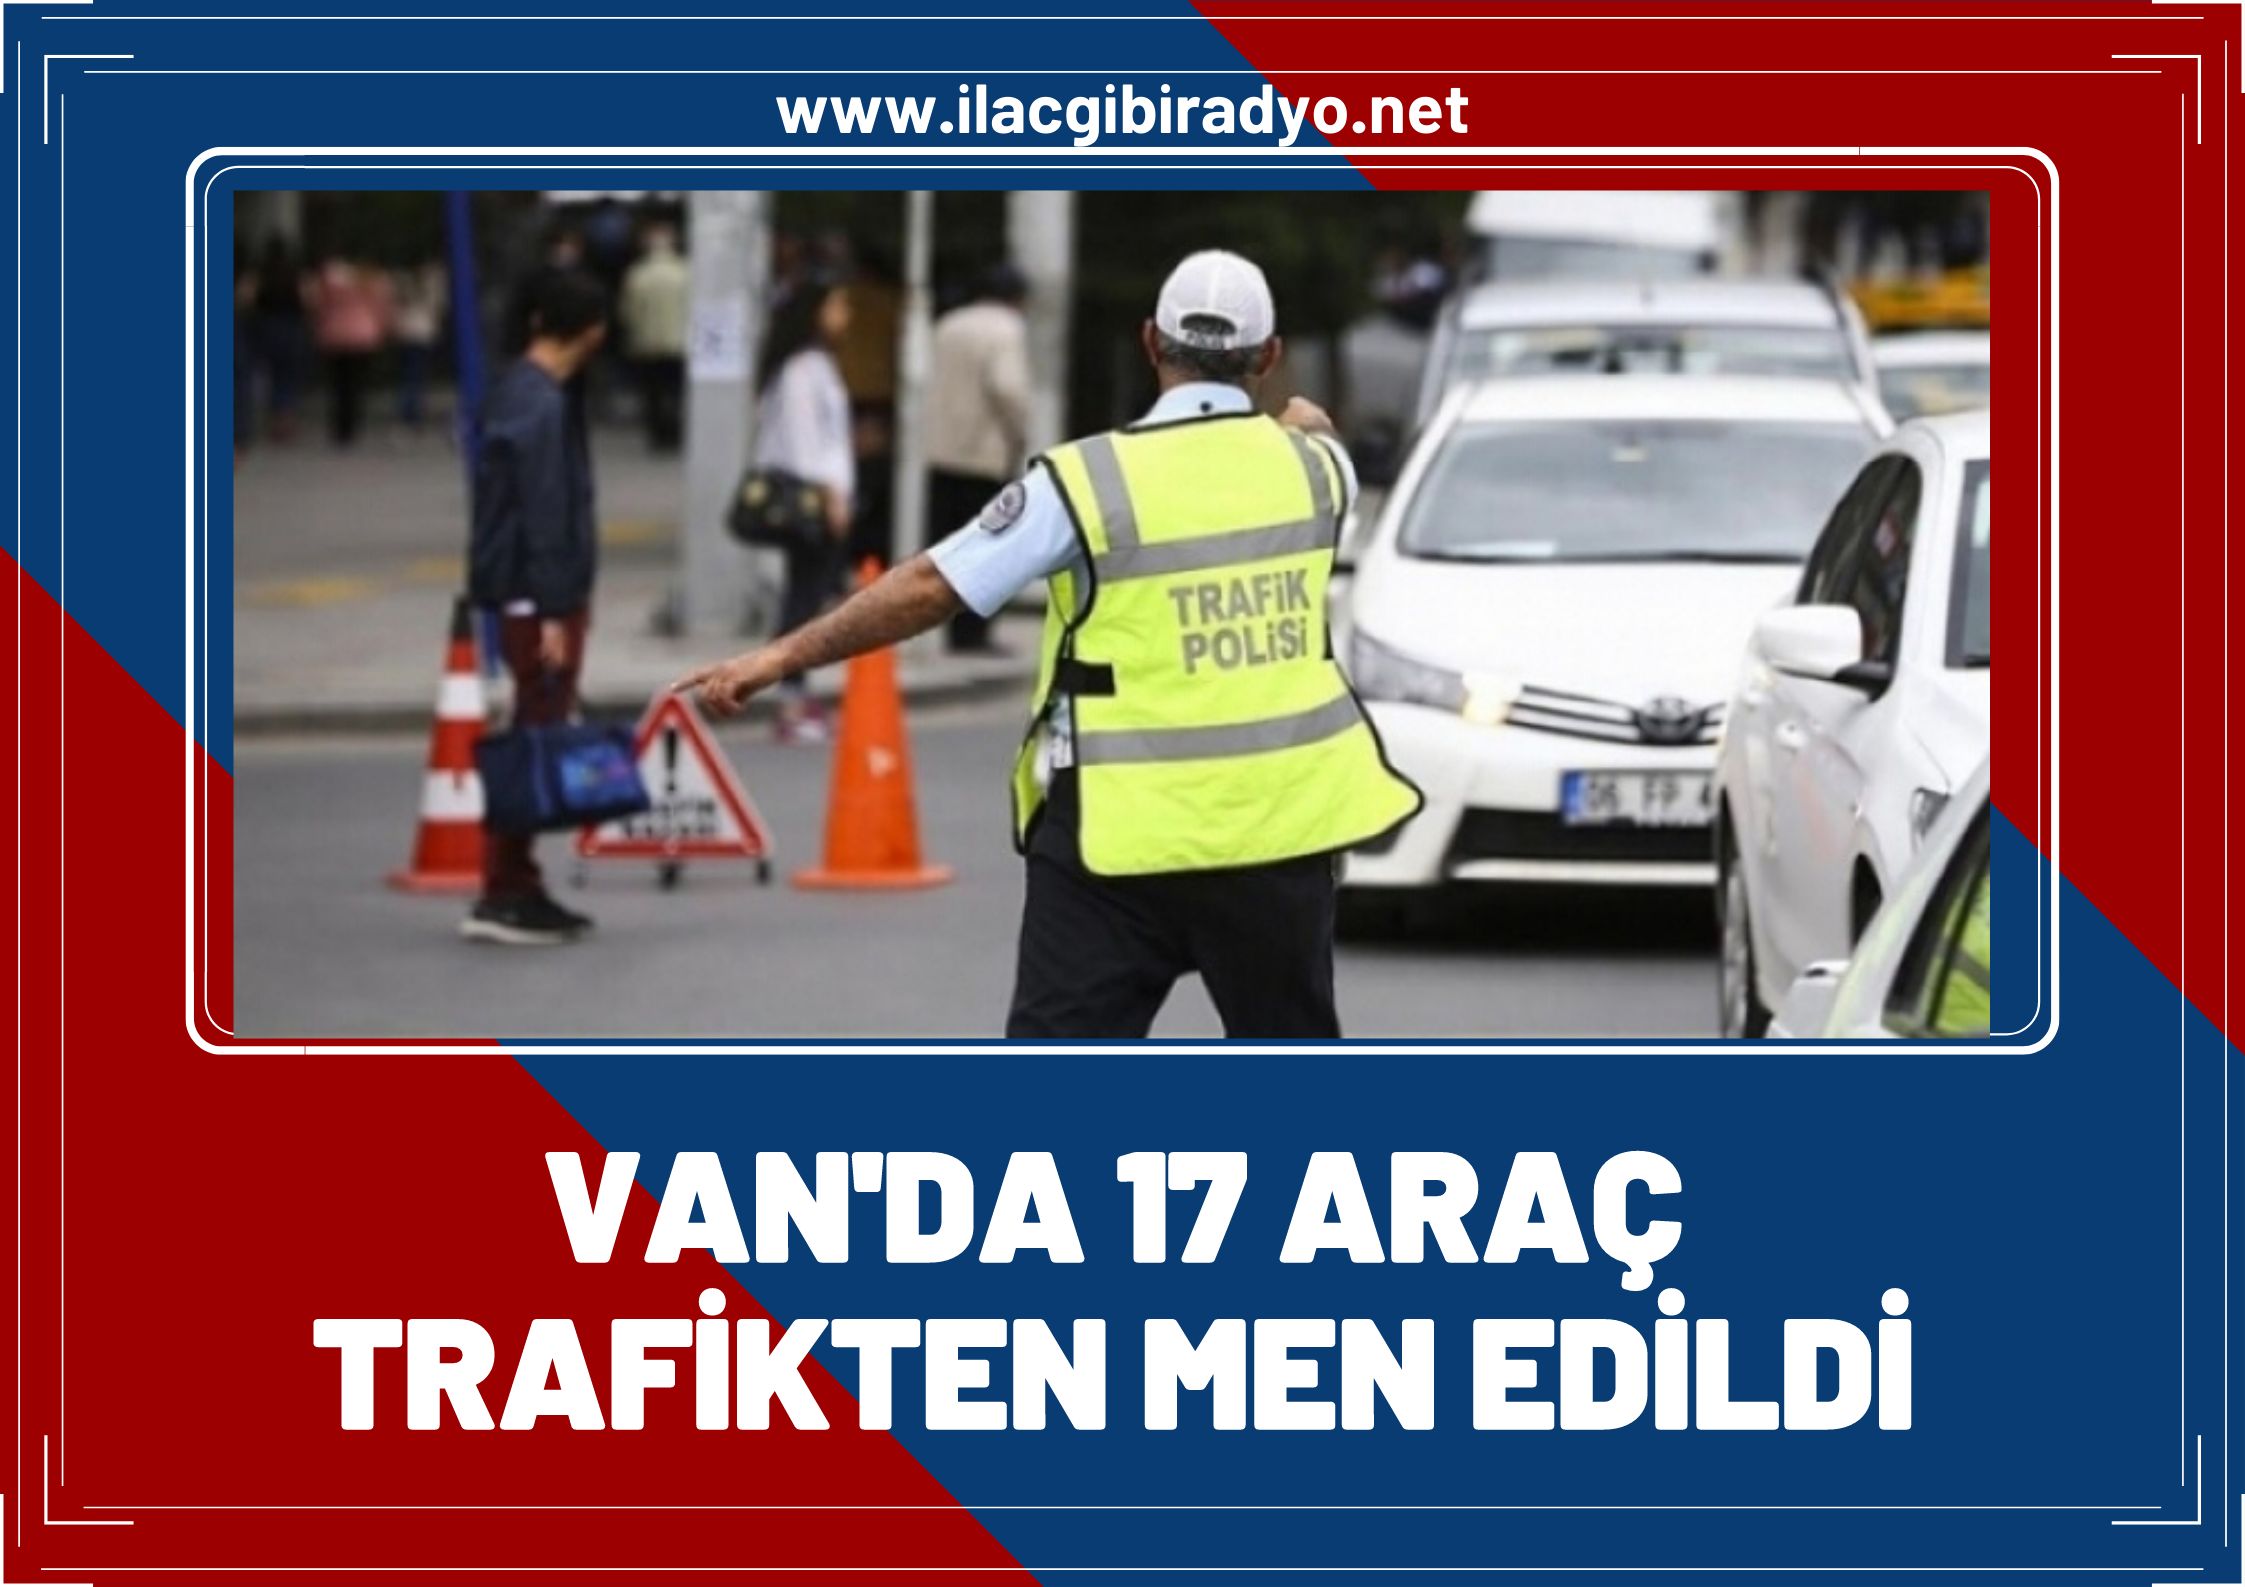 Van'da polis araç sürücülerine ceza yağdırdı: 17 araç trafikten men edildi!